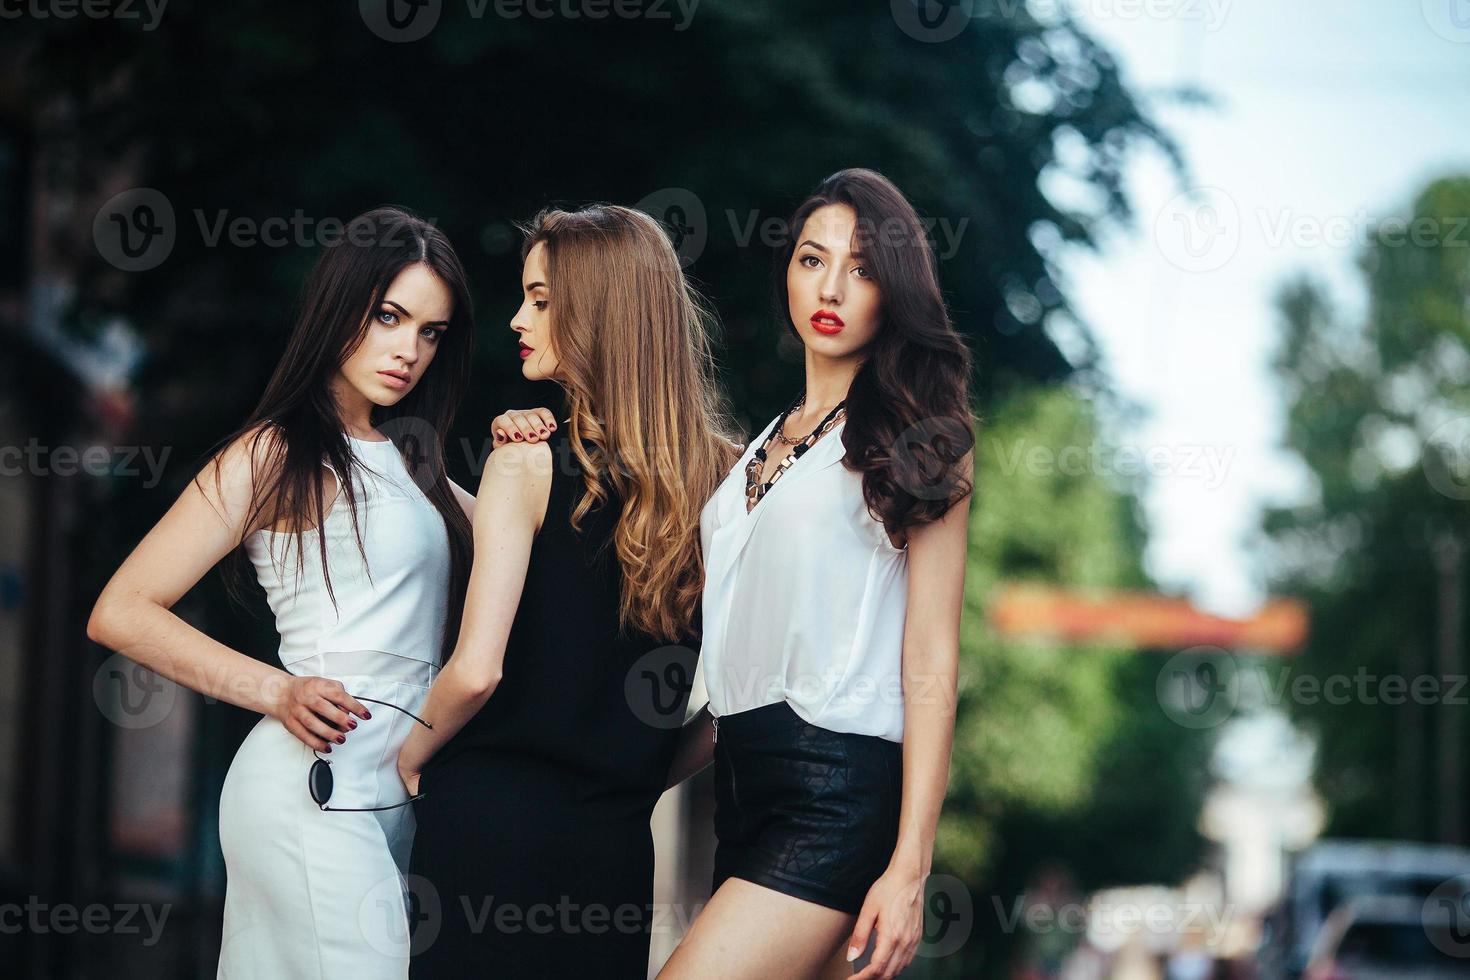 mooi meisjes poseren in een stad straat foto